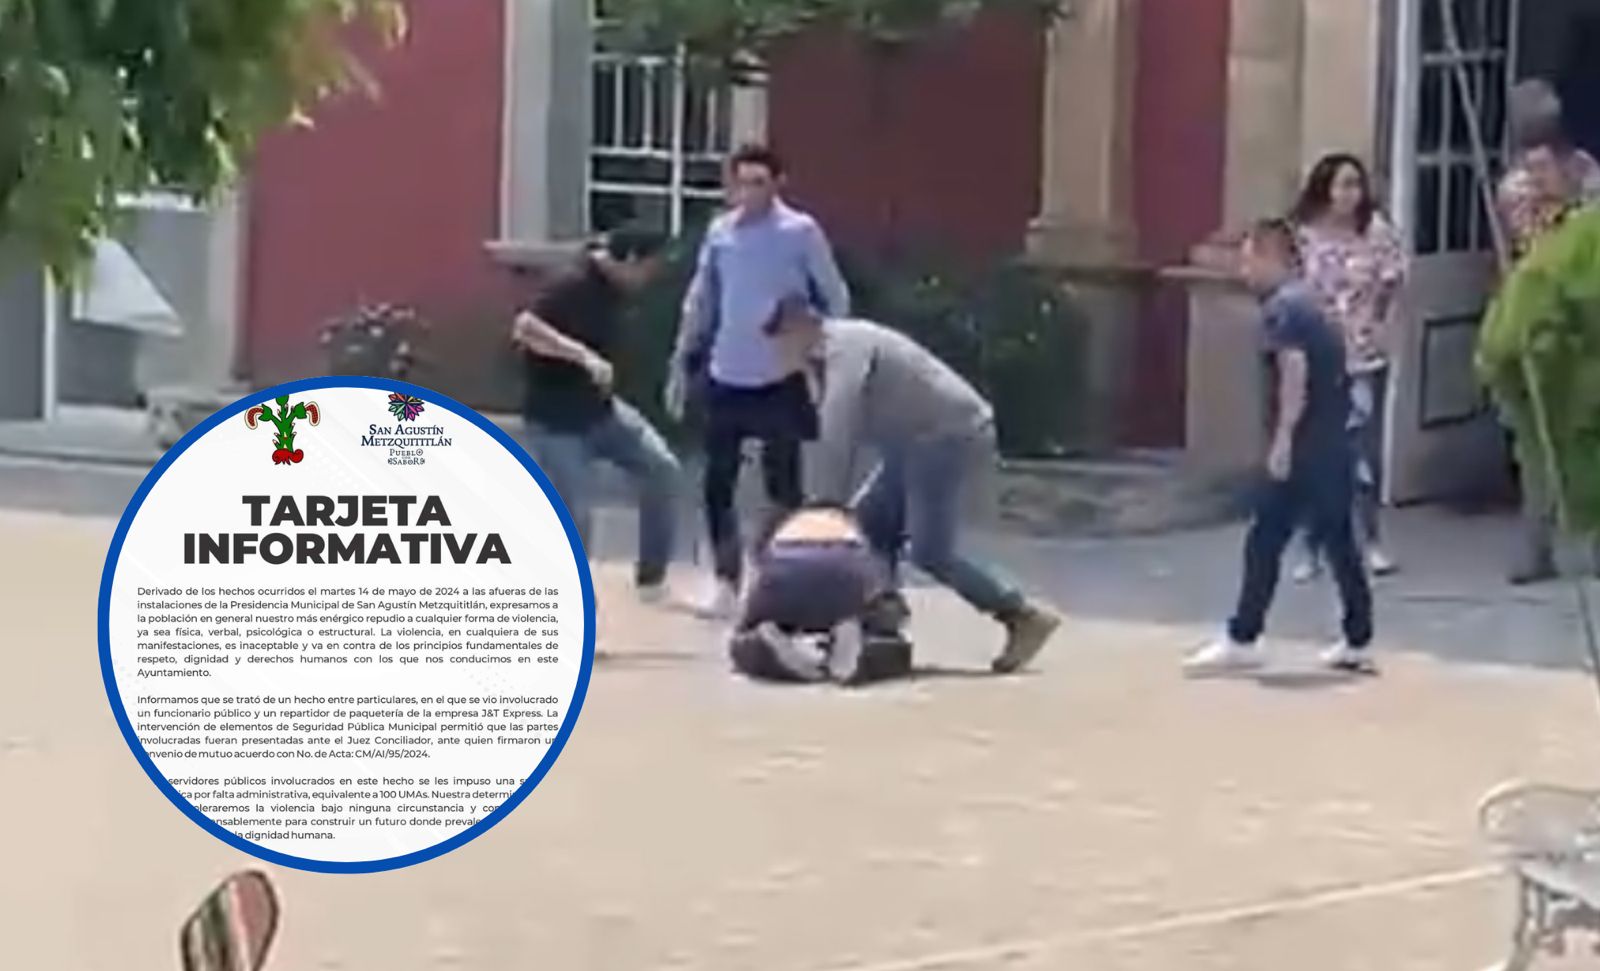 Repudia municipio de San Agustín Metzquititlán actos de violencia